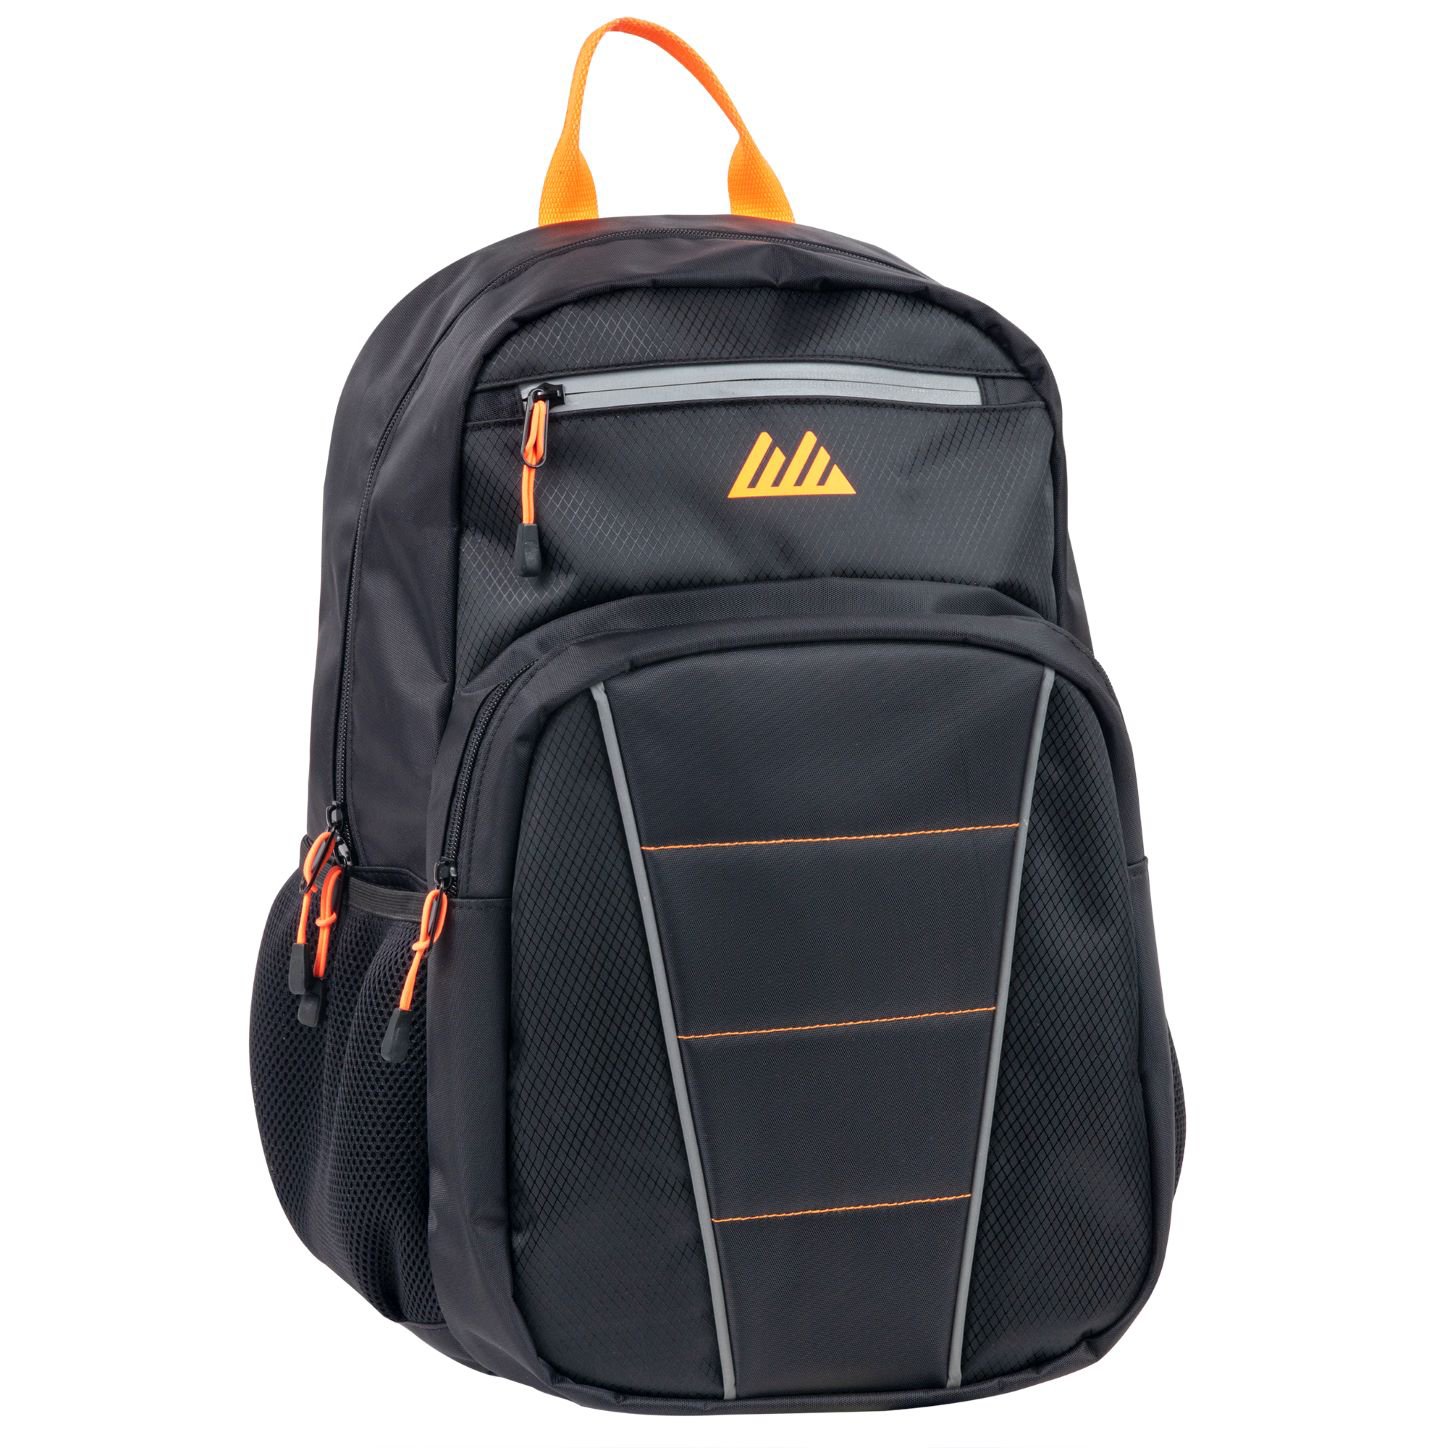 Trailmaker Reflective Backpack - Black - Shop Backpacks at H-E-B